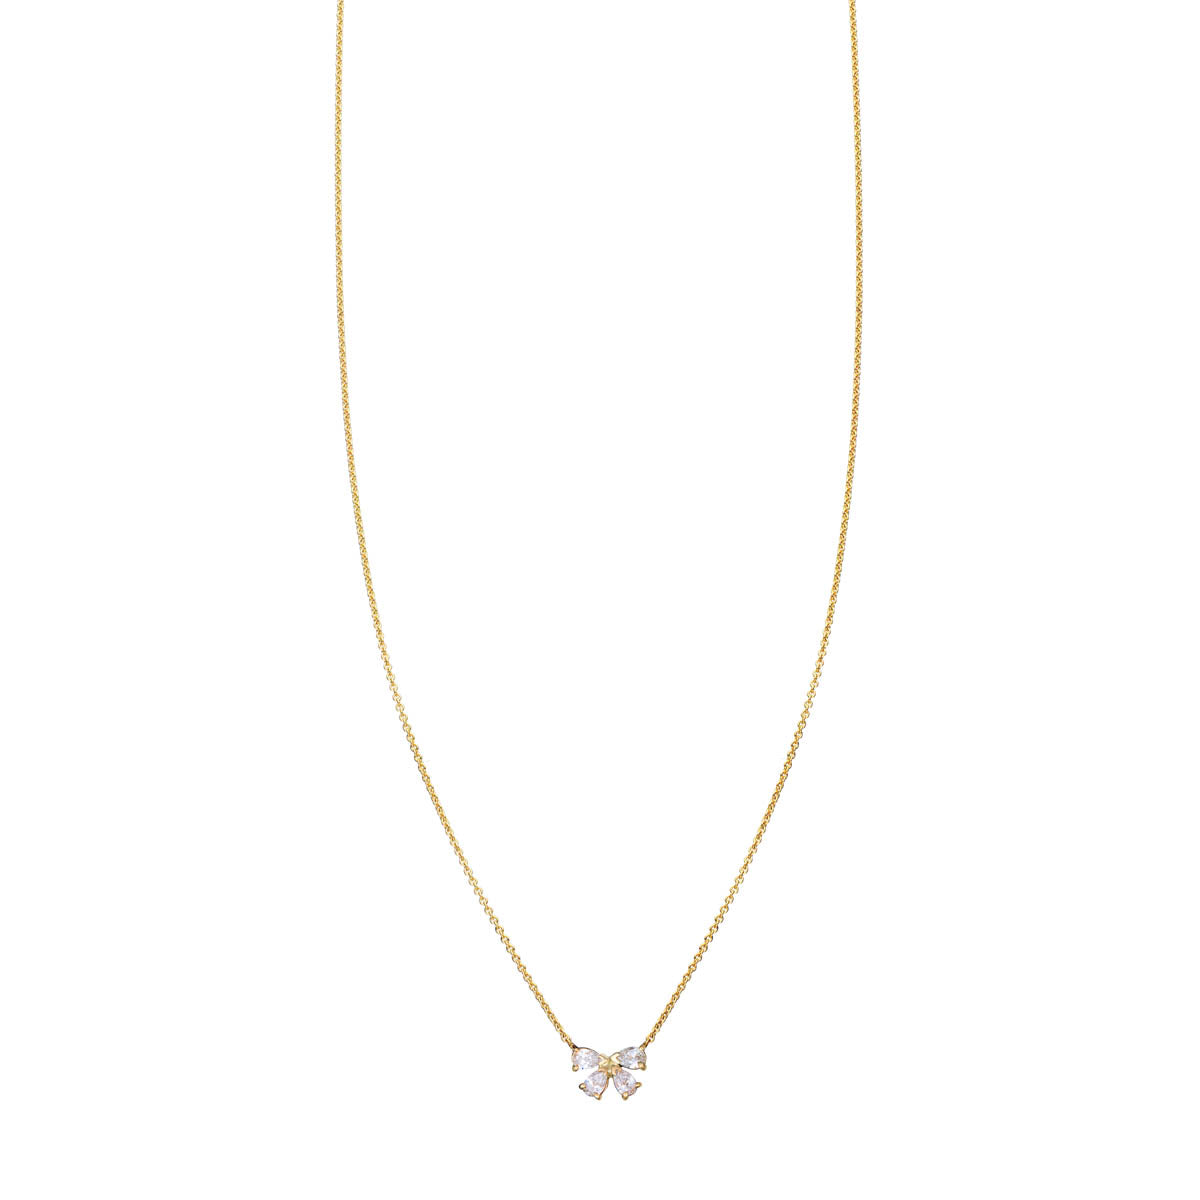 diamond bow necklace PRN 534 WD